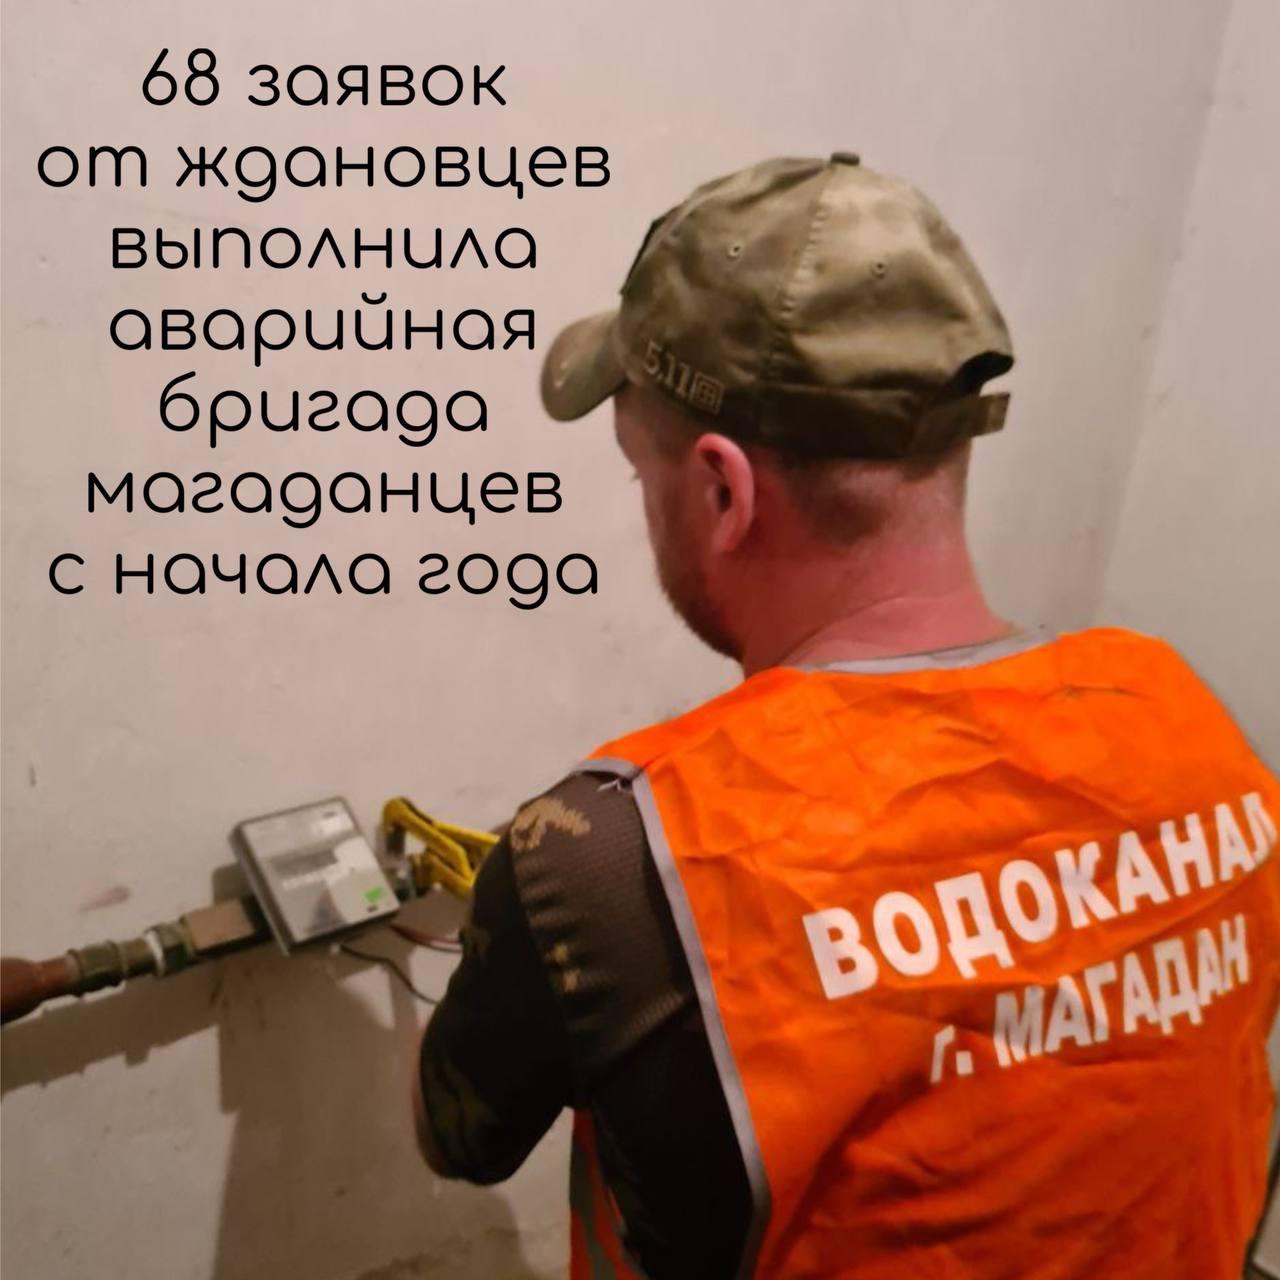 Аварийная бригада Магаданской области трудится в Ждановке.